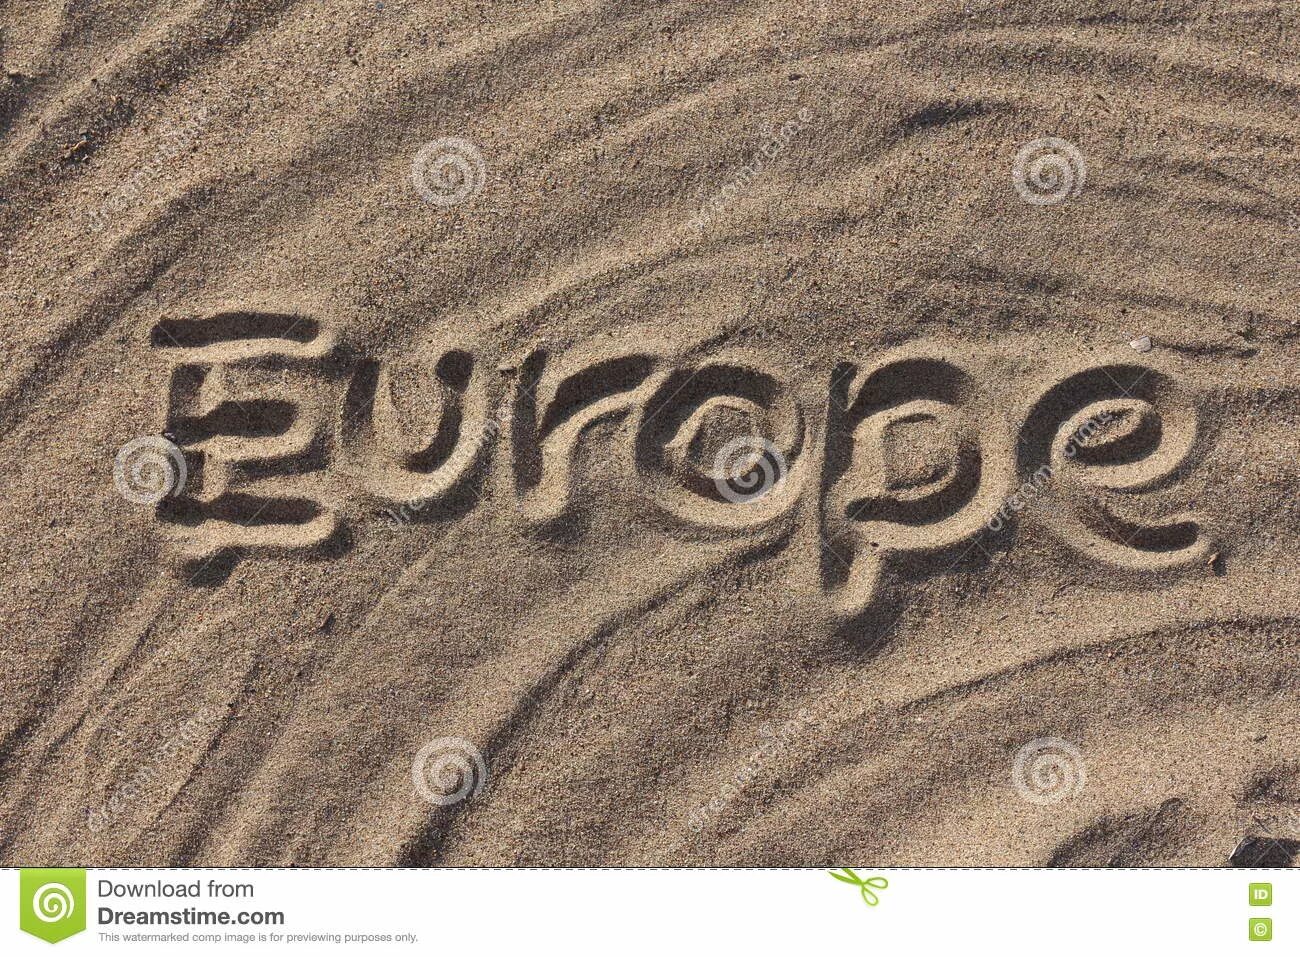 Europa текст. Европа слово. Фото слово Europe. Слово Европа фото. Европа текст.